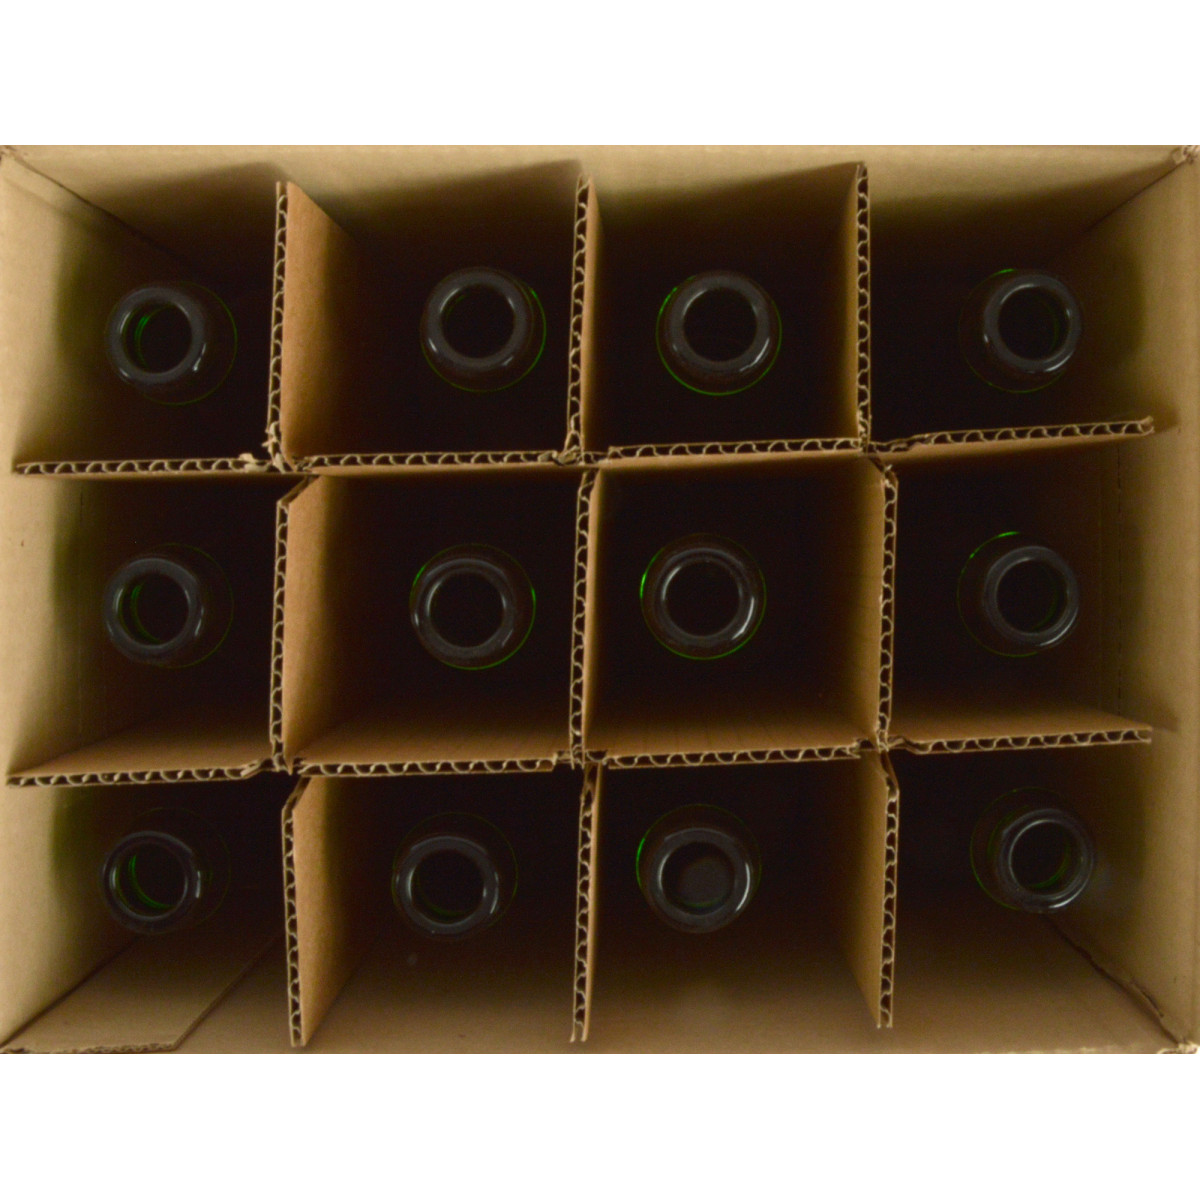 Geuze/Sektflasche 37,5 cl, grün, 29 mm KK, Karton 12 St.